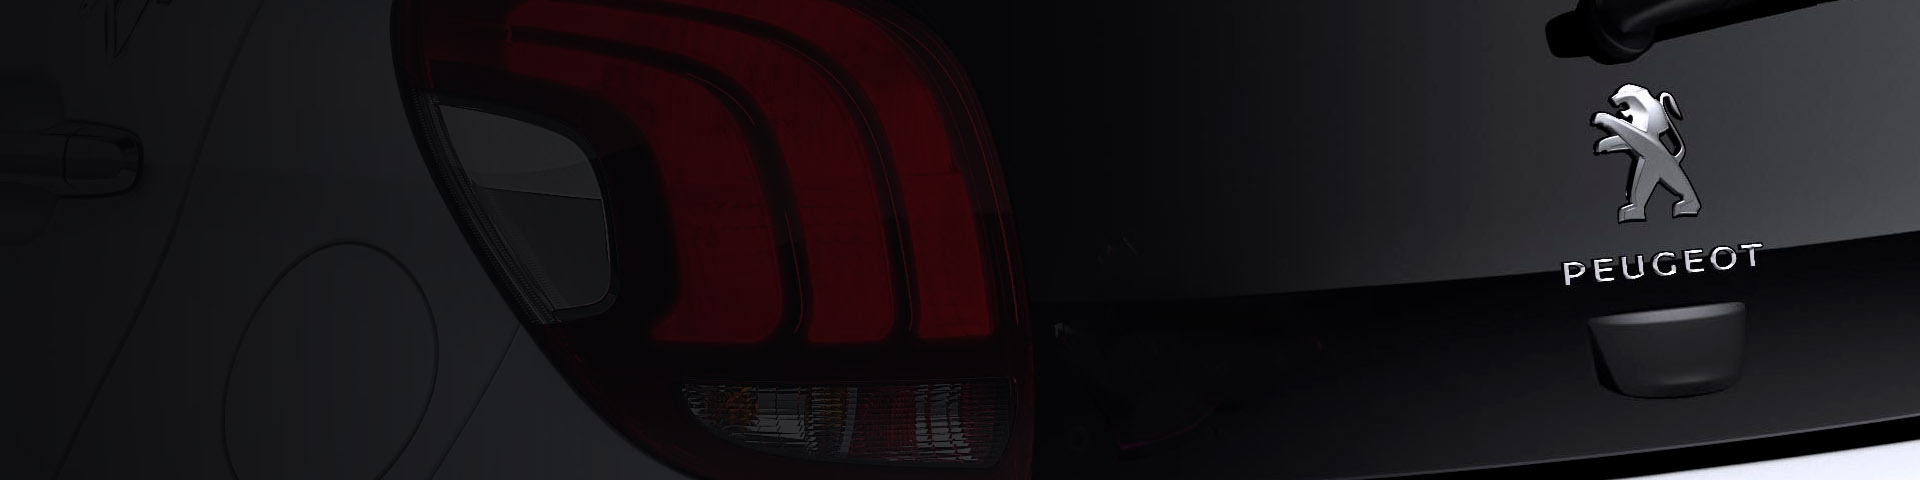 Peugeot E-208 Hatchback Backdrop